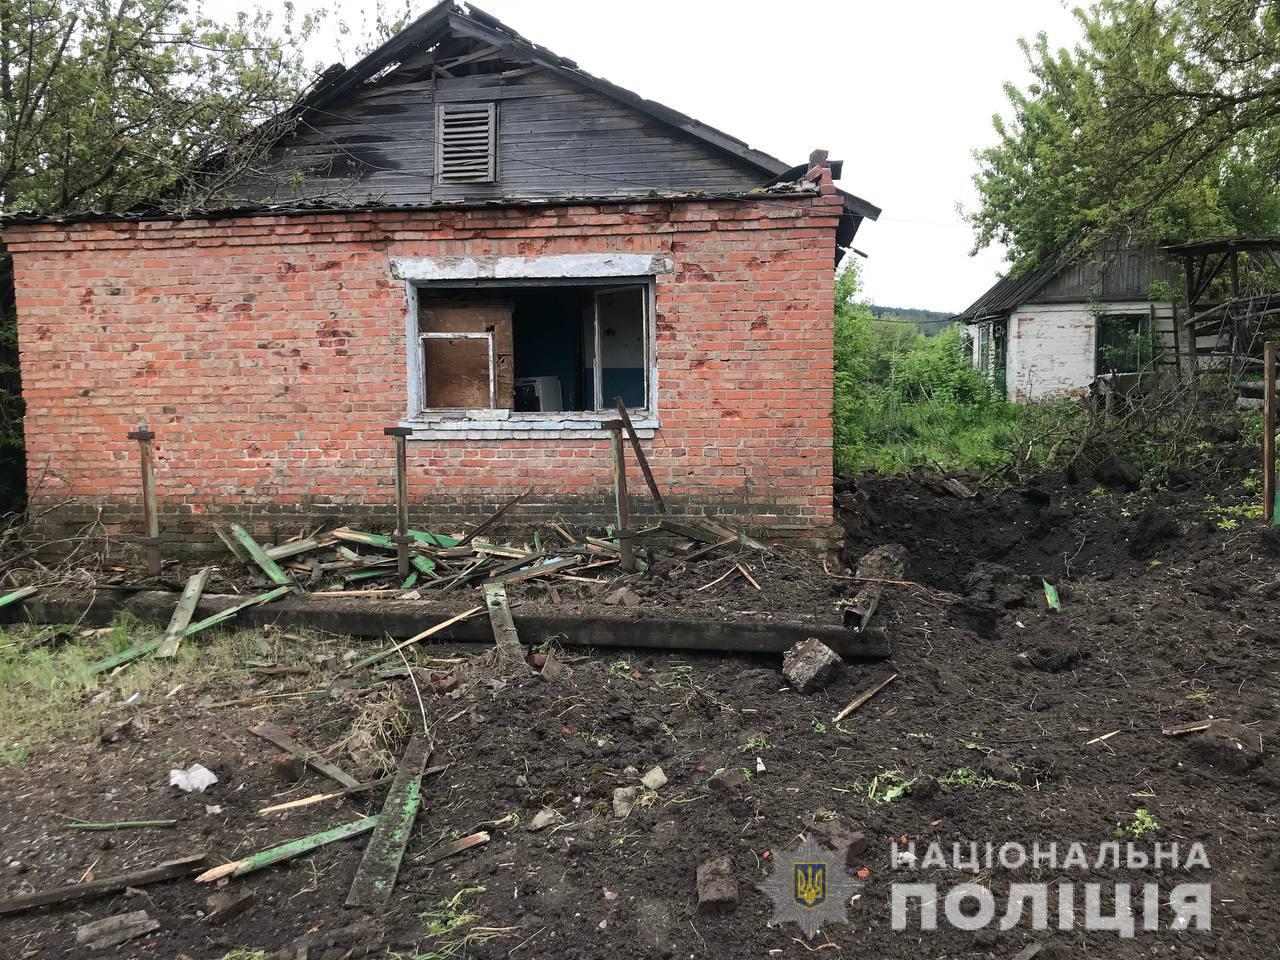 Трое мирных жителей Донецкой области погибли 14 мая. Под прицелом оказались 11 населенных пунктов, — полиция (ФОТО) 6